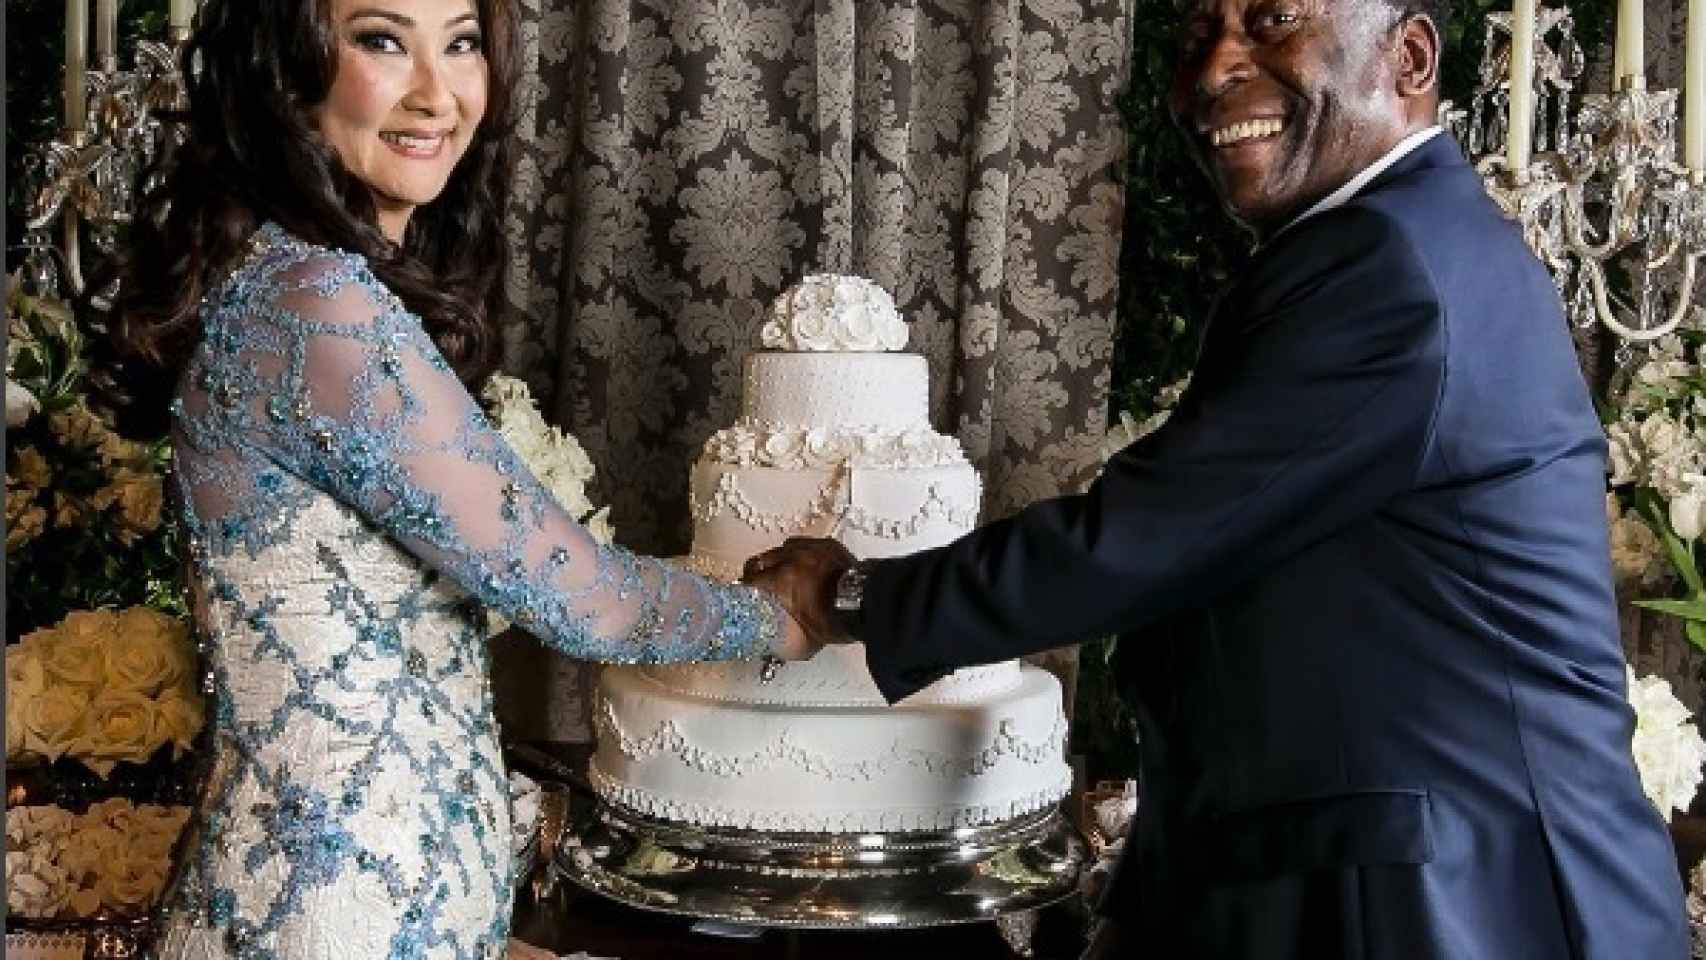 El jugador y su ya esposa, partiendo la tarta nupcial